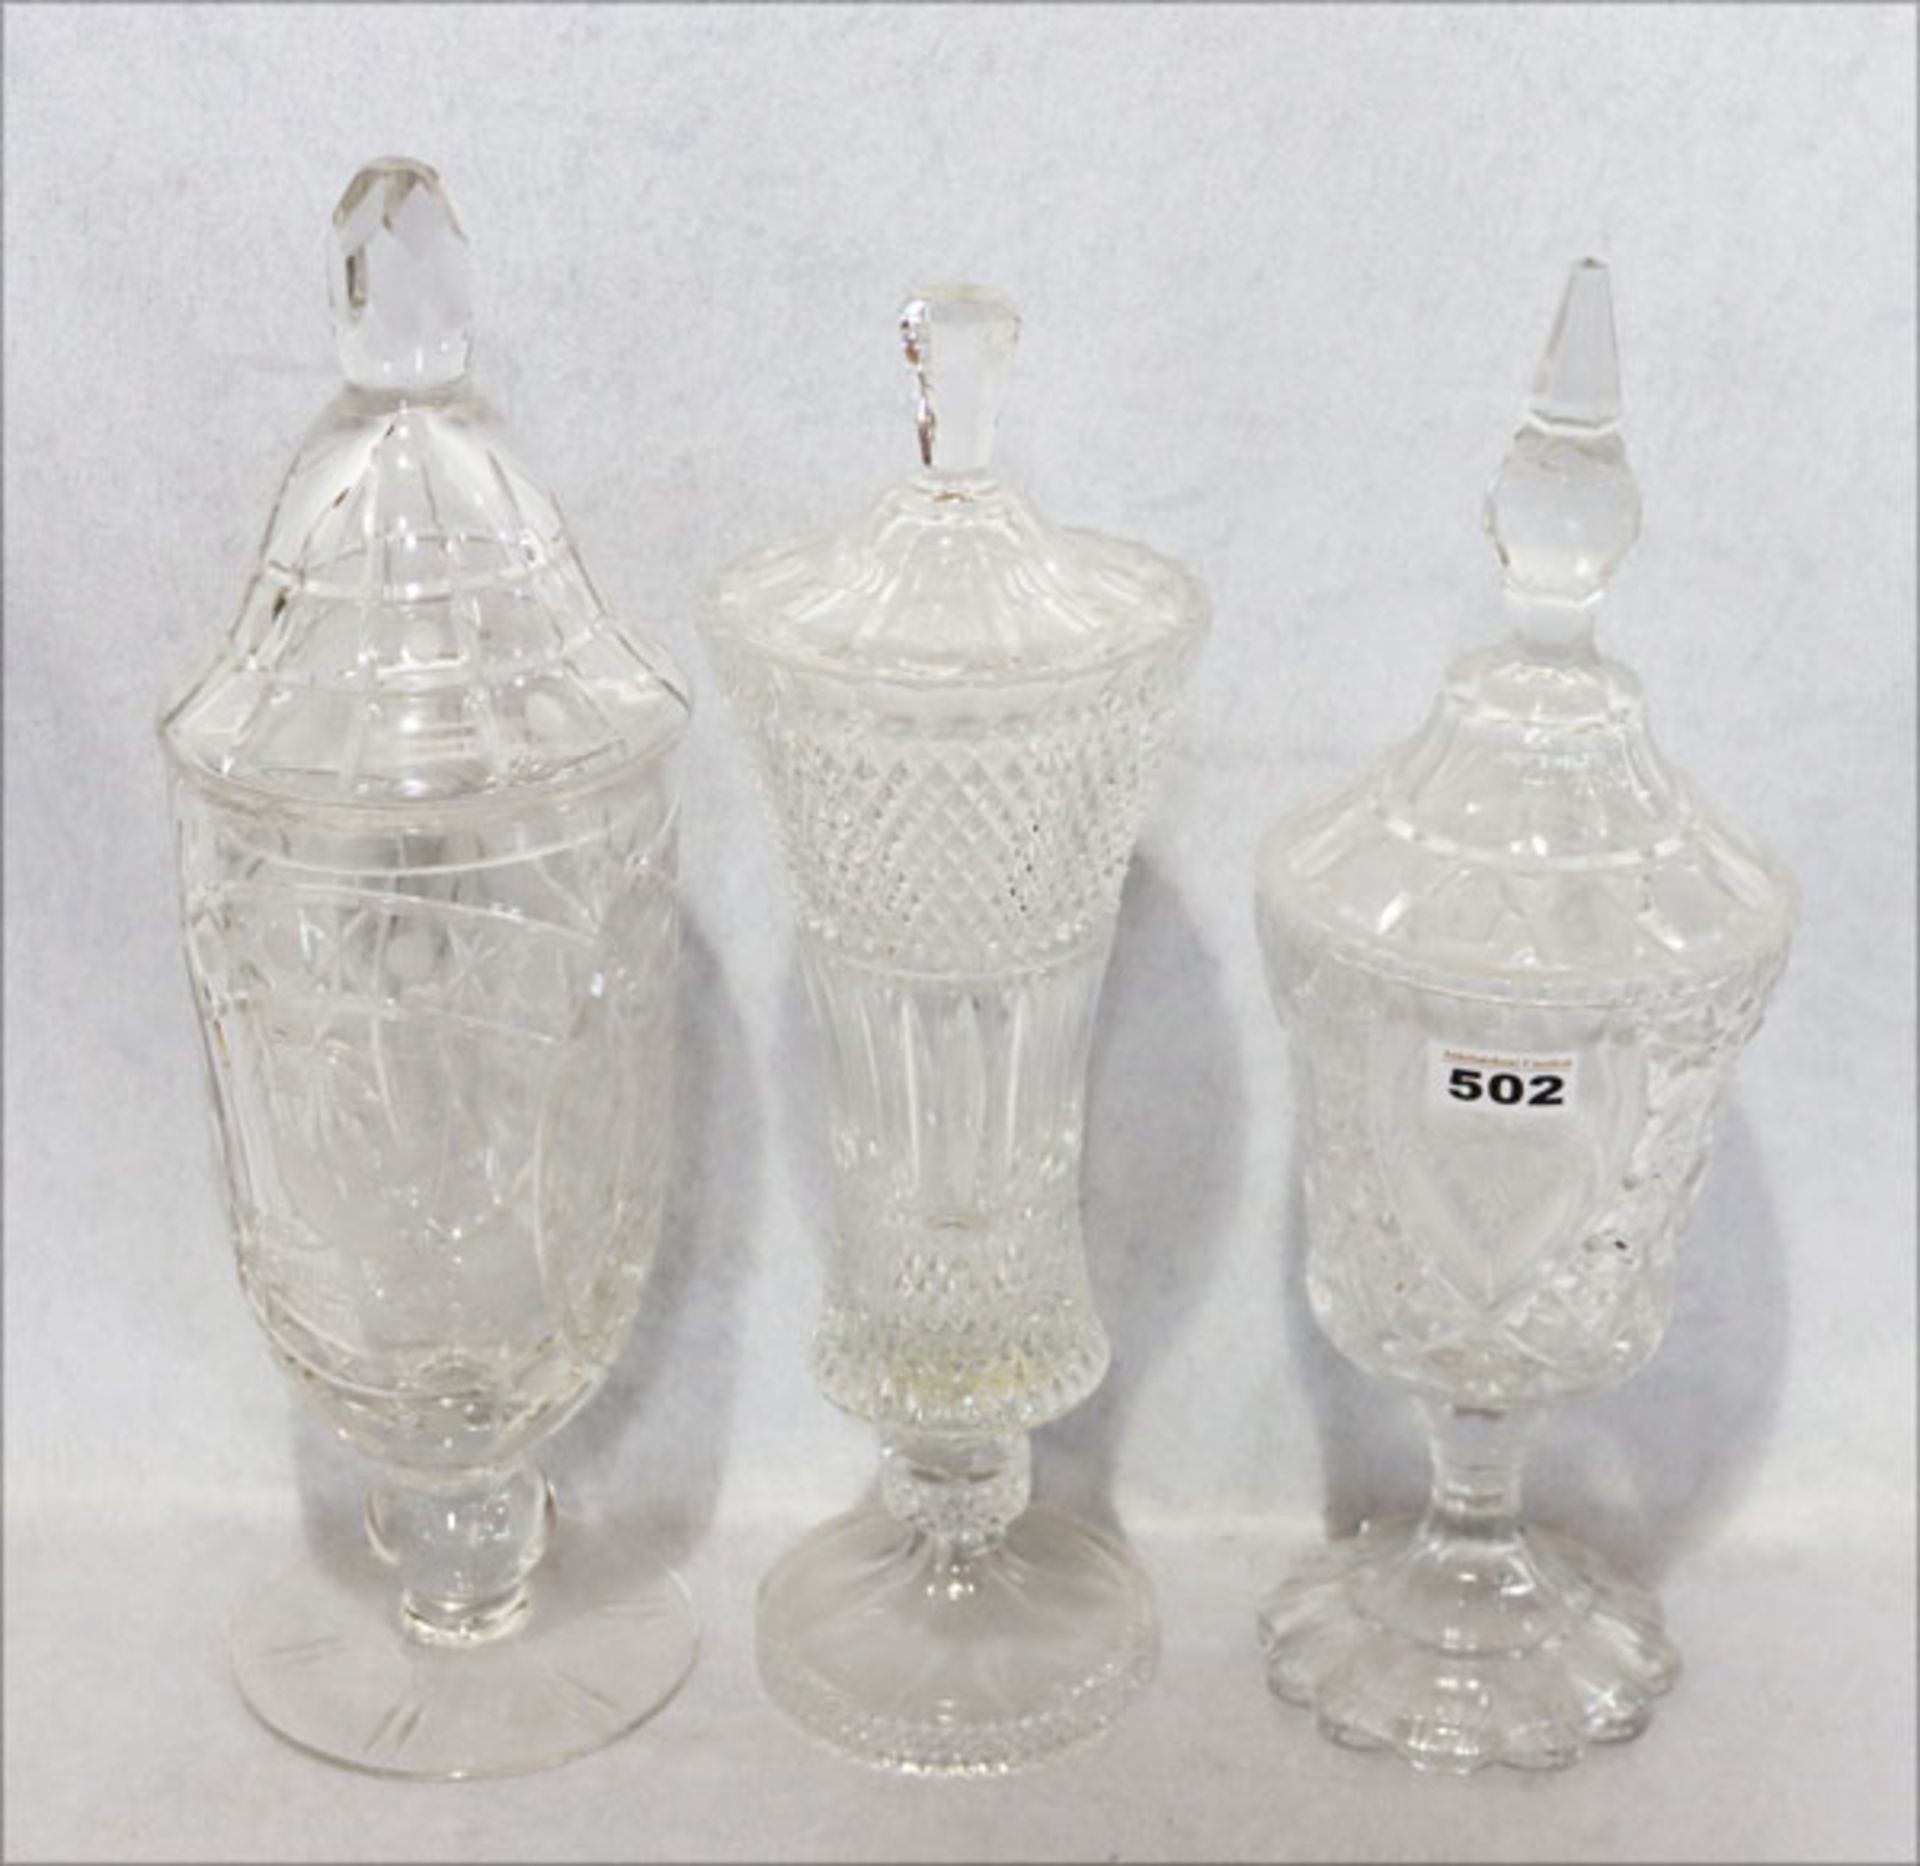 Konvolut von 3 Glas Pokalen, einer mit Mittenwalder Wappen und Widmung graviert, ein Pokal mit